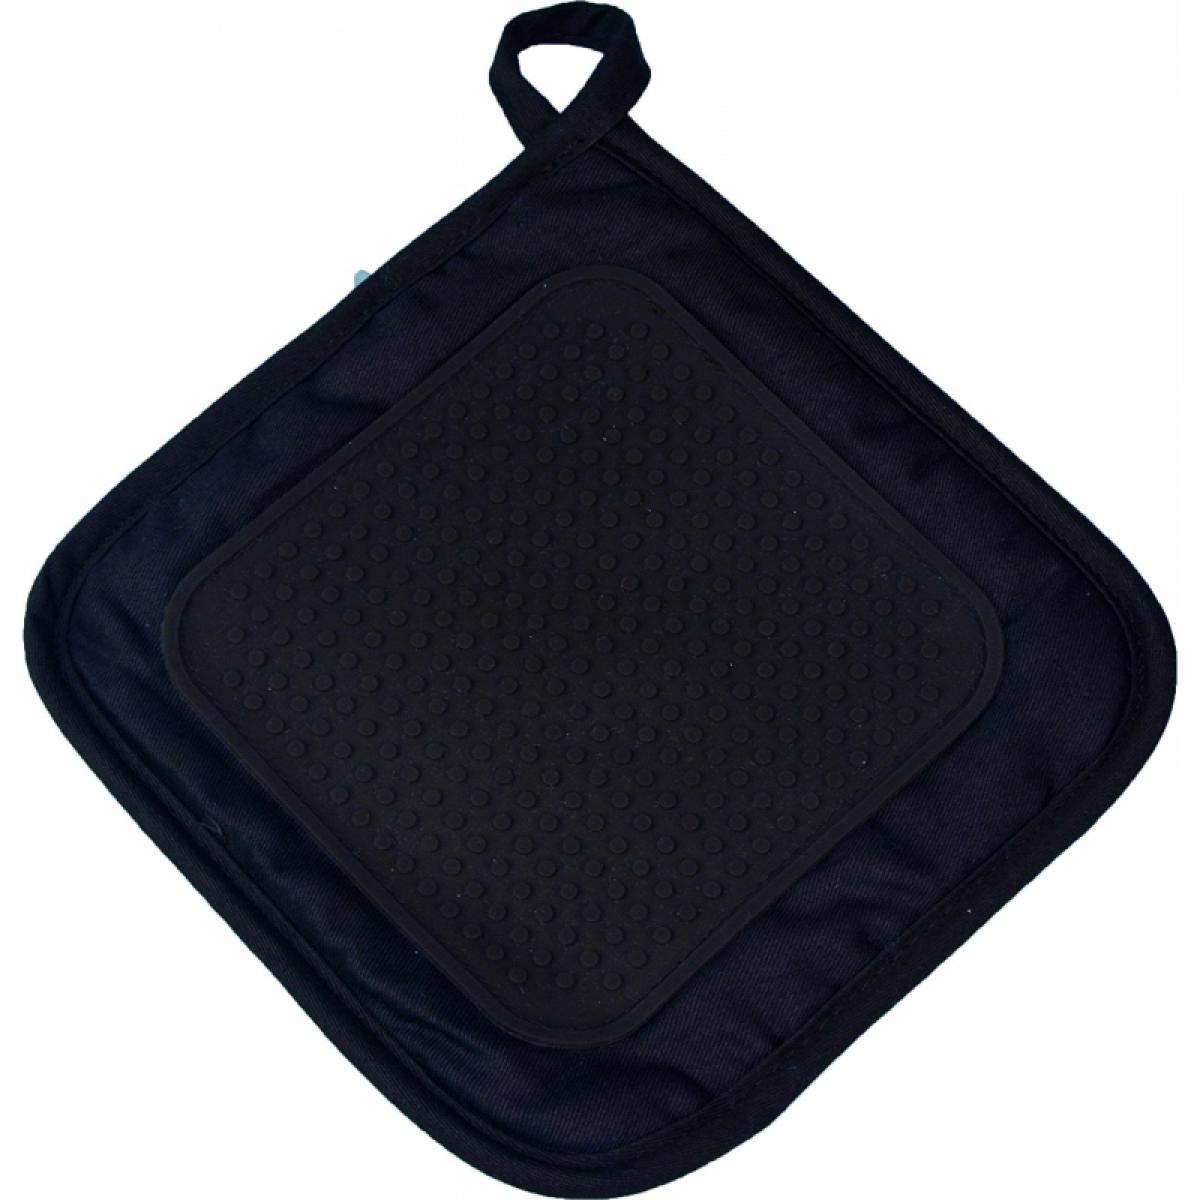 Decorline - Manique avec protection en silicone - Cuistot - Noir - Accessoires barbecue